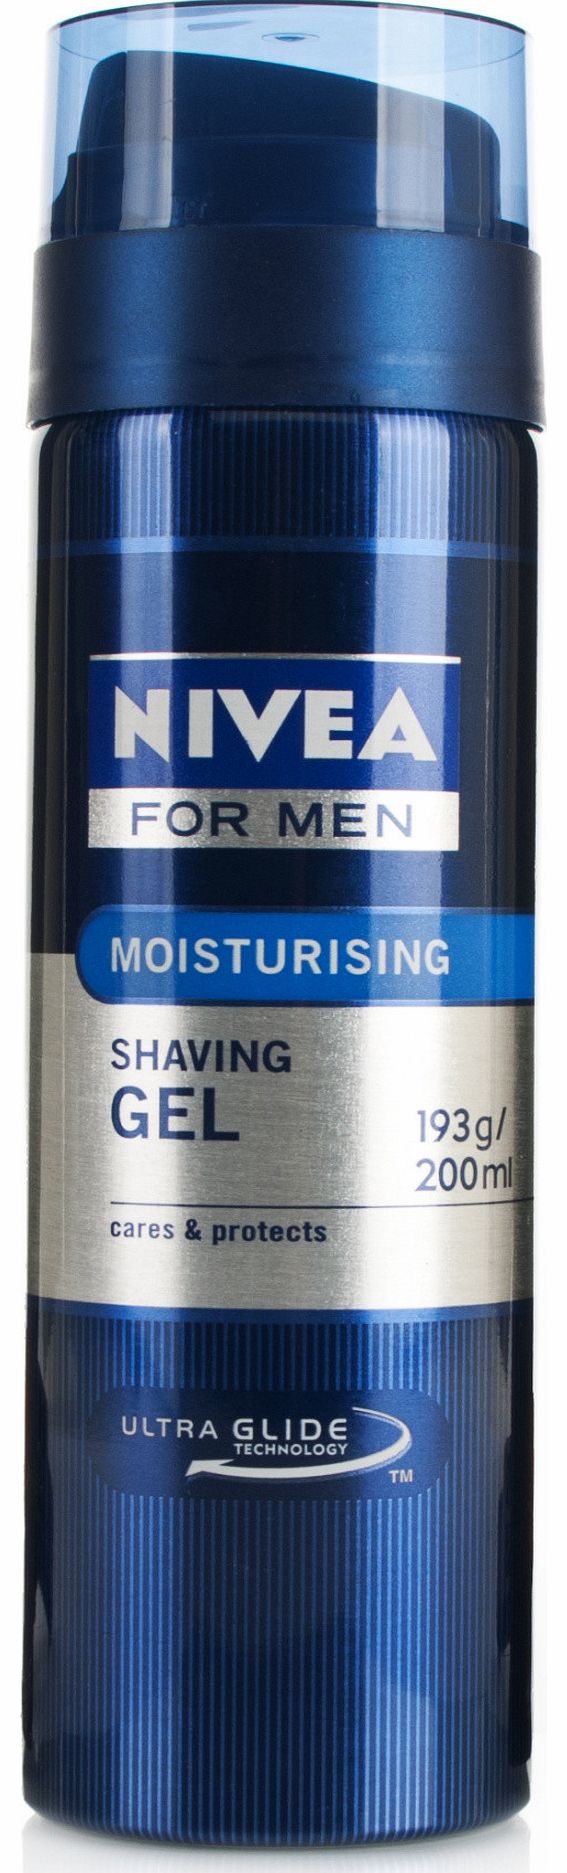 For Men Moisturising Shaving Gel